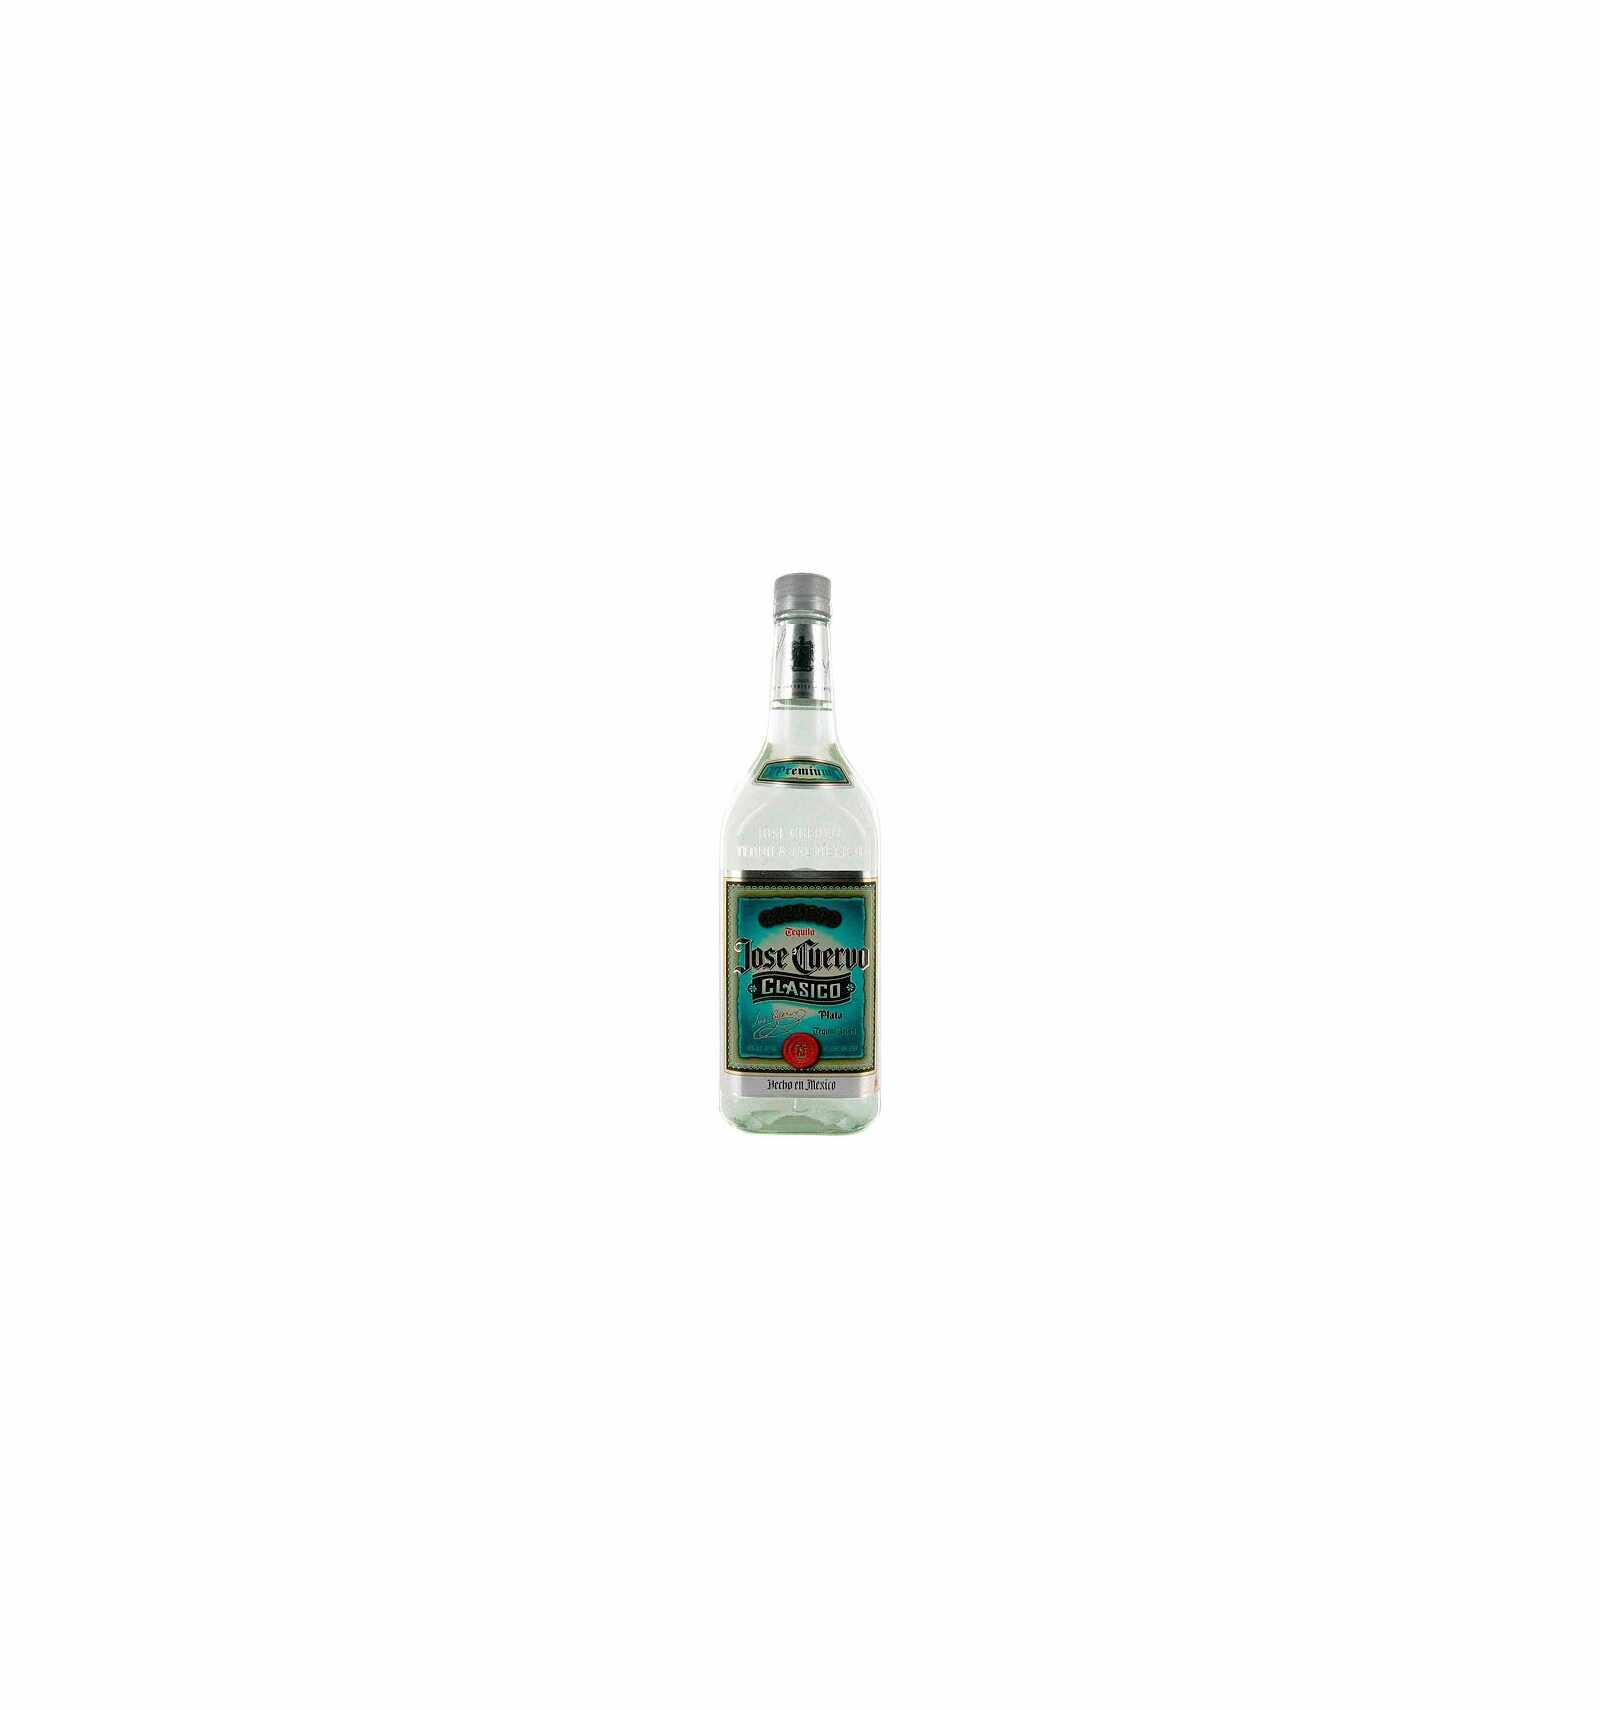 Tequila alba Jose Cuervo Classico White 0.7L, 38% alc., Mexic